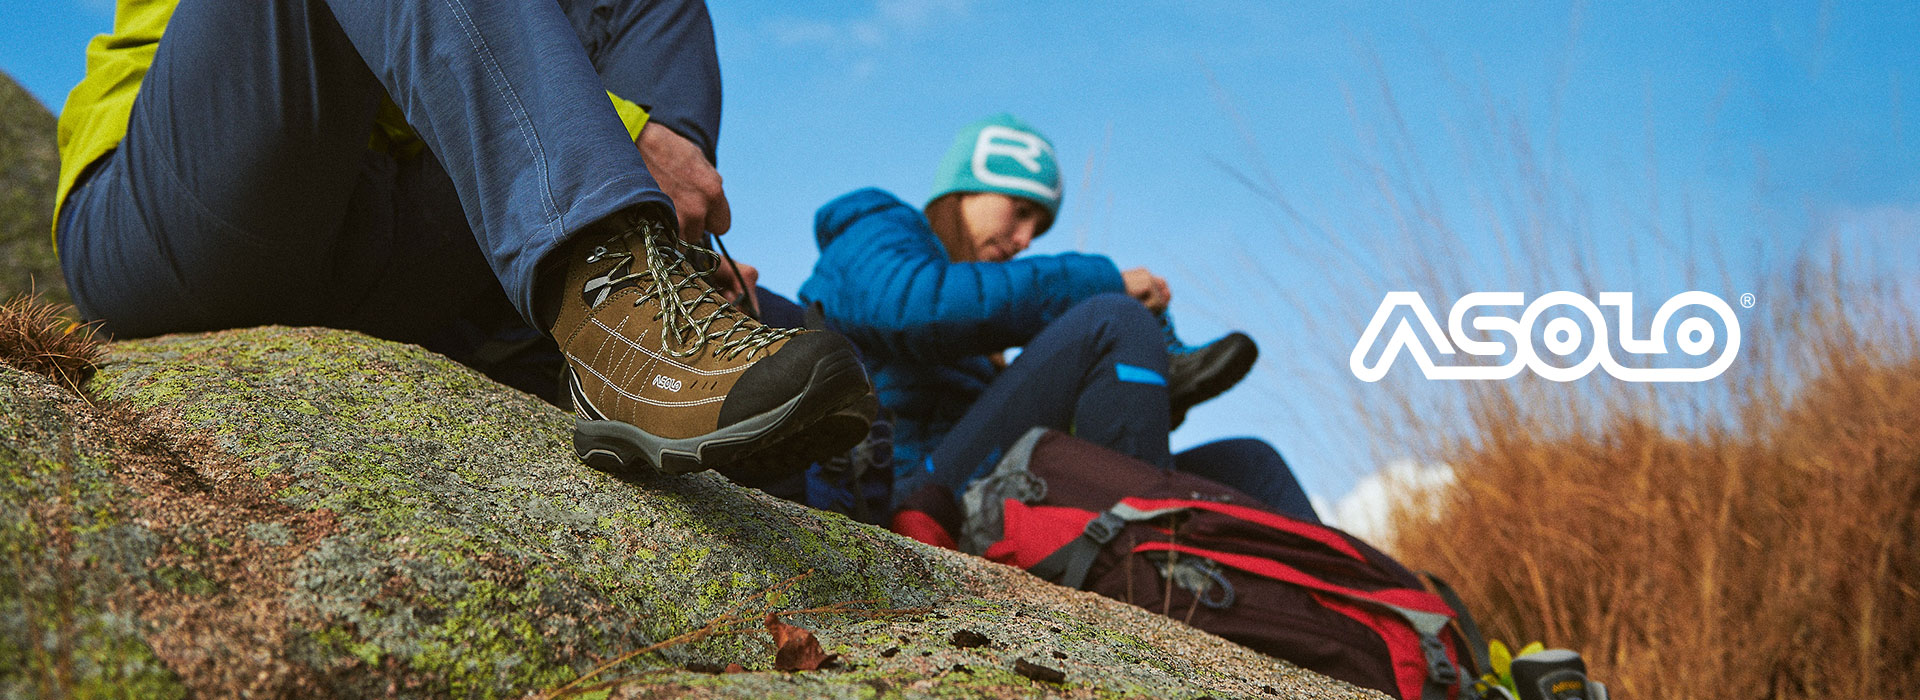 Asolo es una compañía italiana fundada en 1975 dedicada a la confección de zapatos y botas de gran desempeño para trekking y montañismo. Asolo ha ganado importantes reconocimientos a nivel mundial por la calidad e innovación en sus productos.